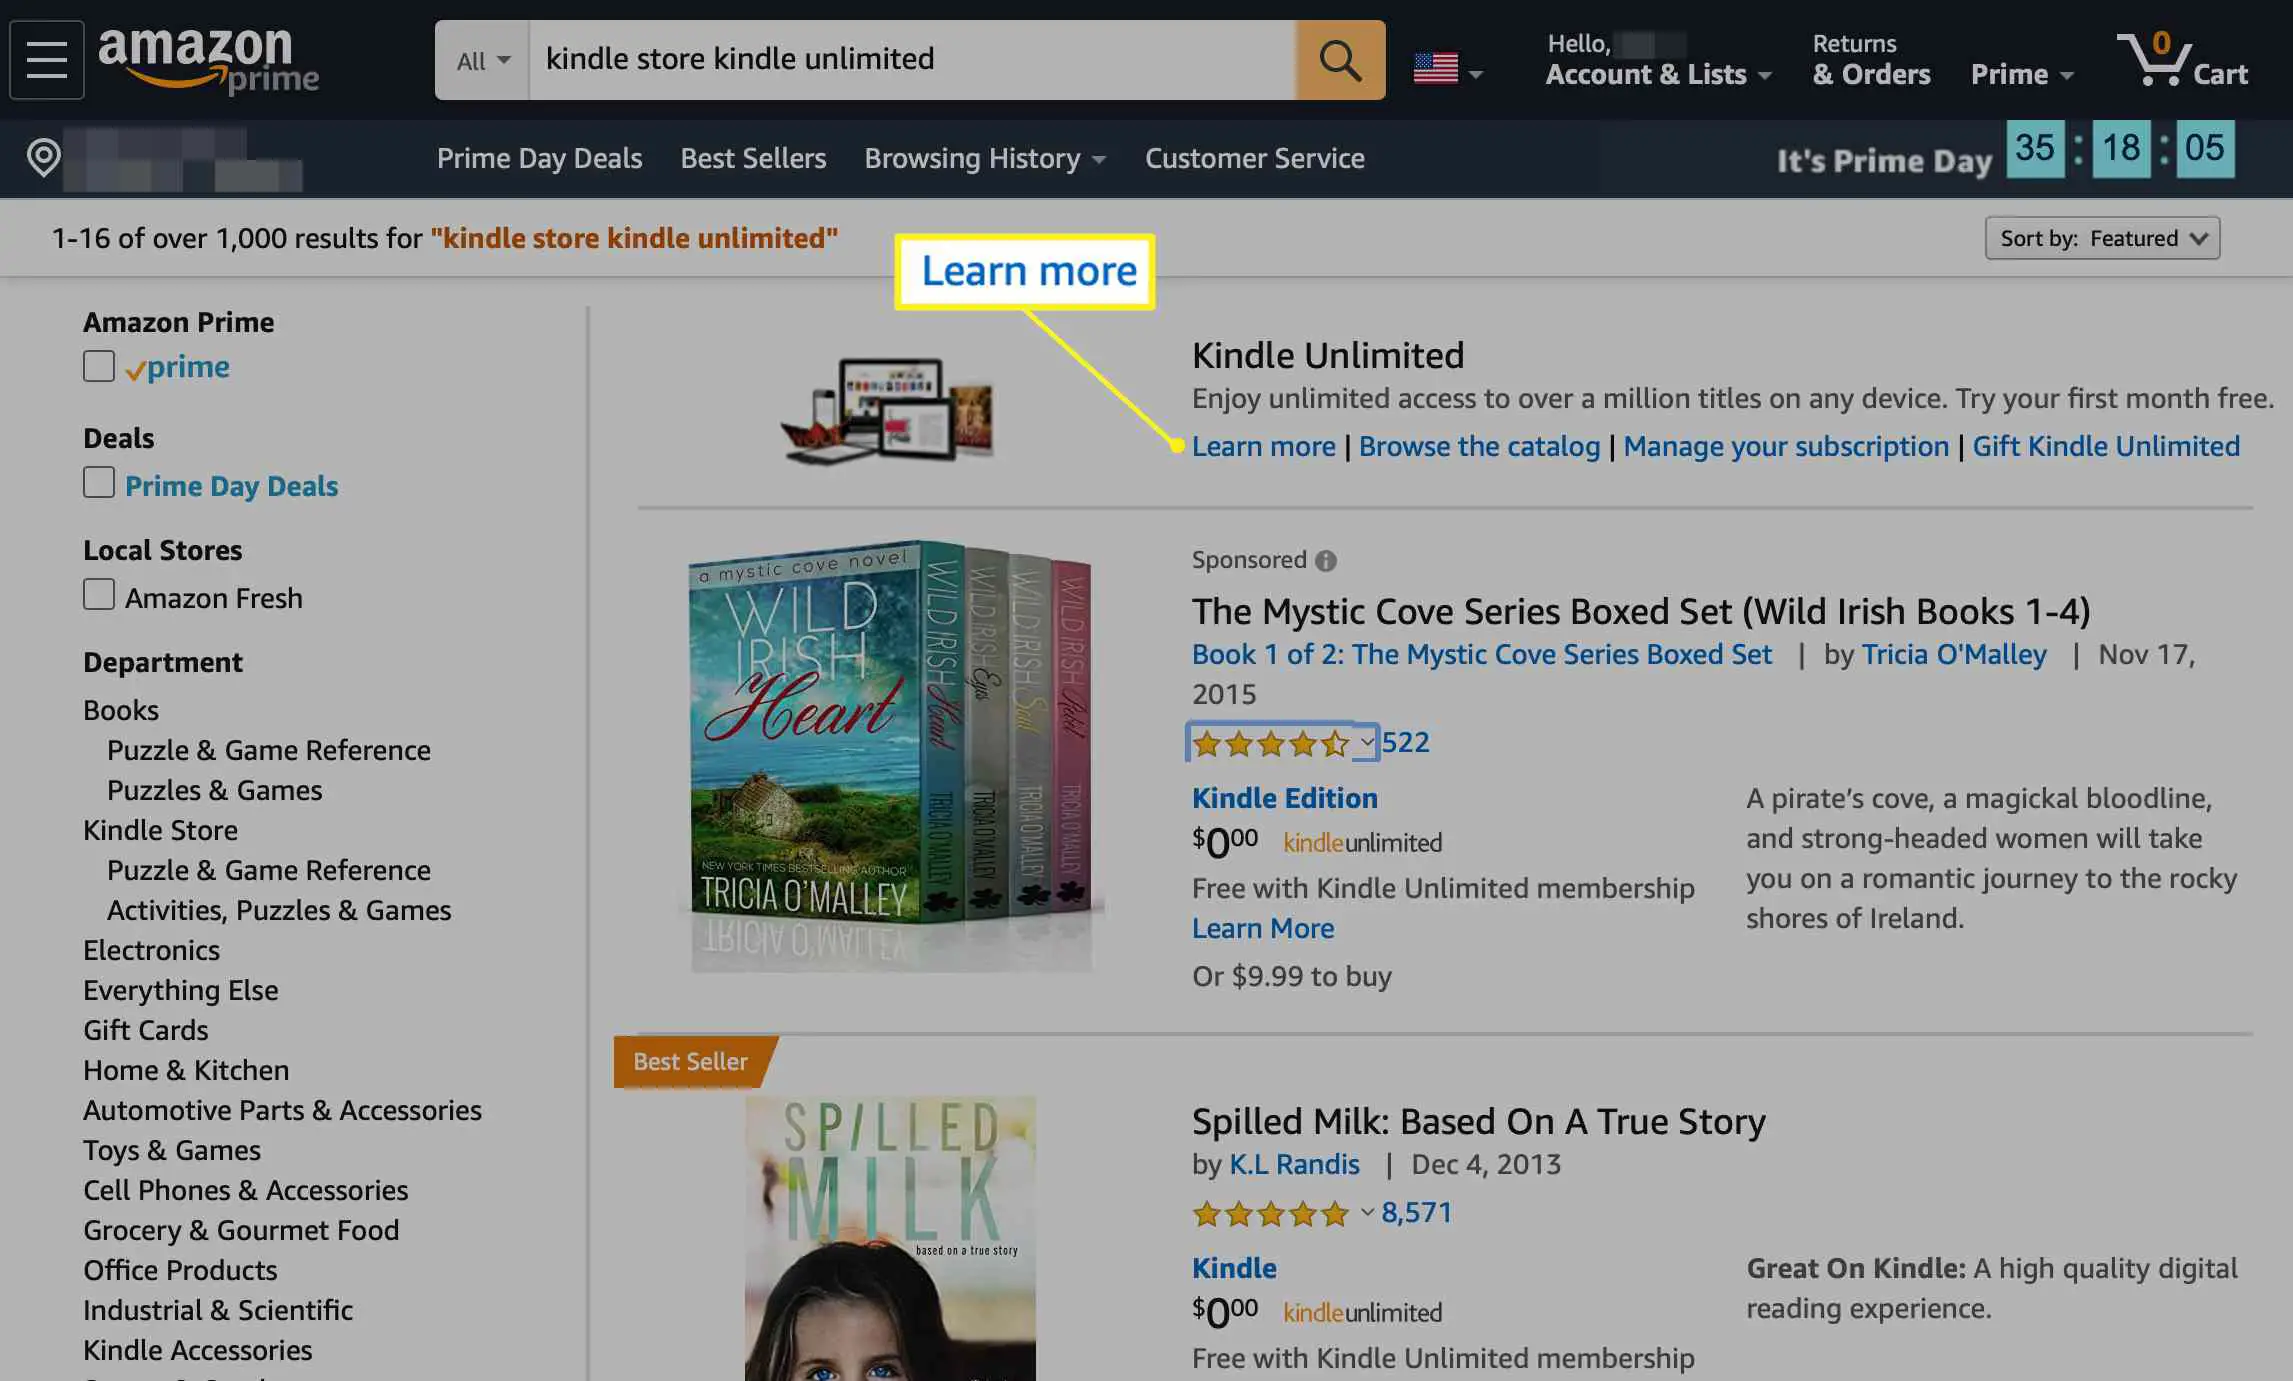 Amazon.com com Saiba mais selecionado na seção Kindle Unlimited